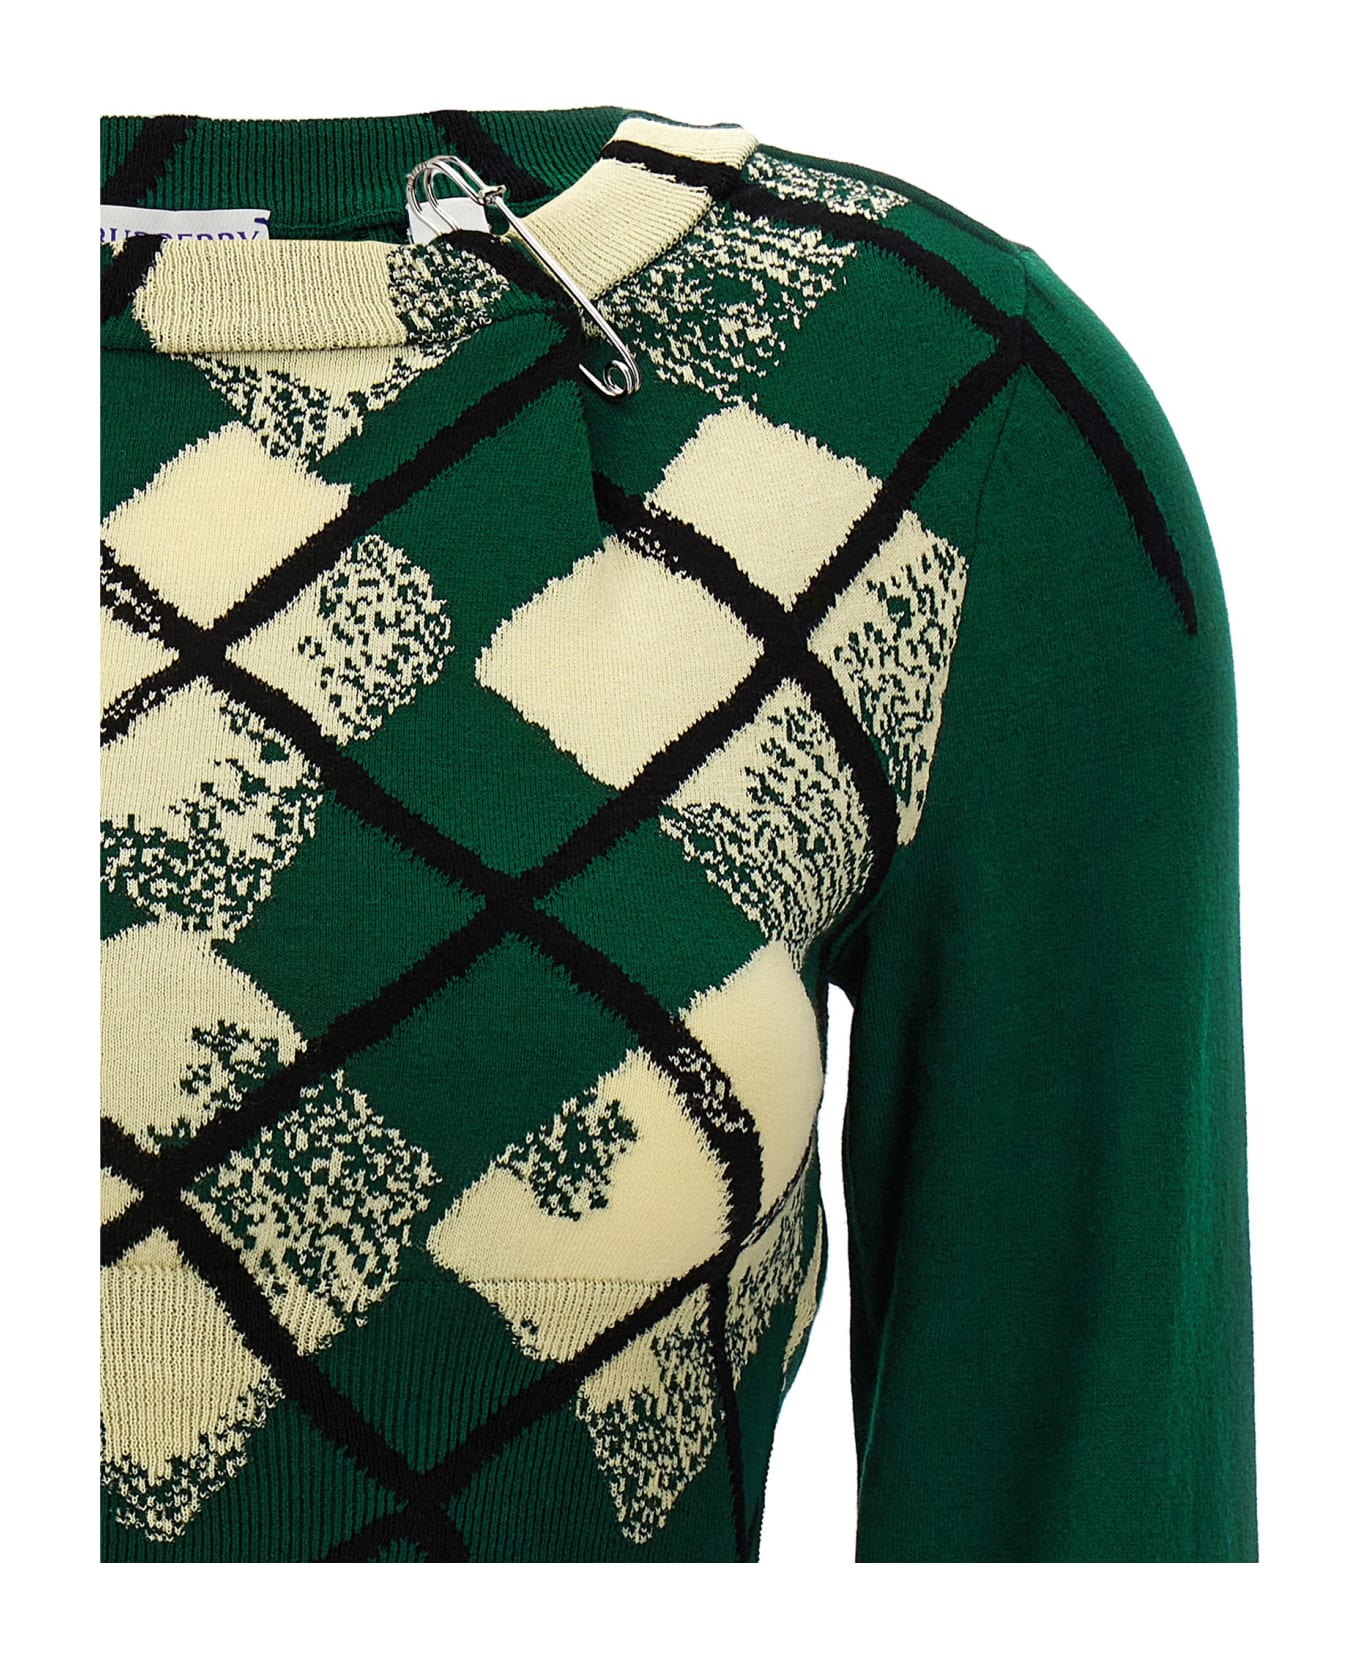 Burberry Argyle Pattern Sweater - Green ニットウェア